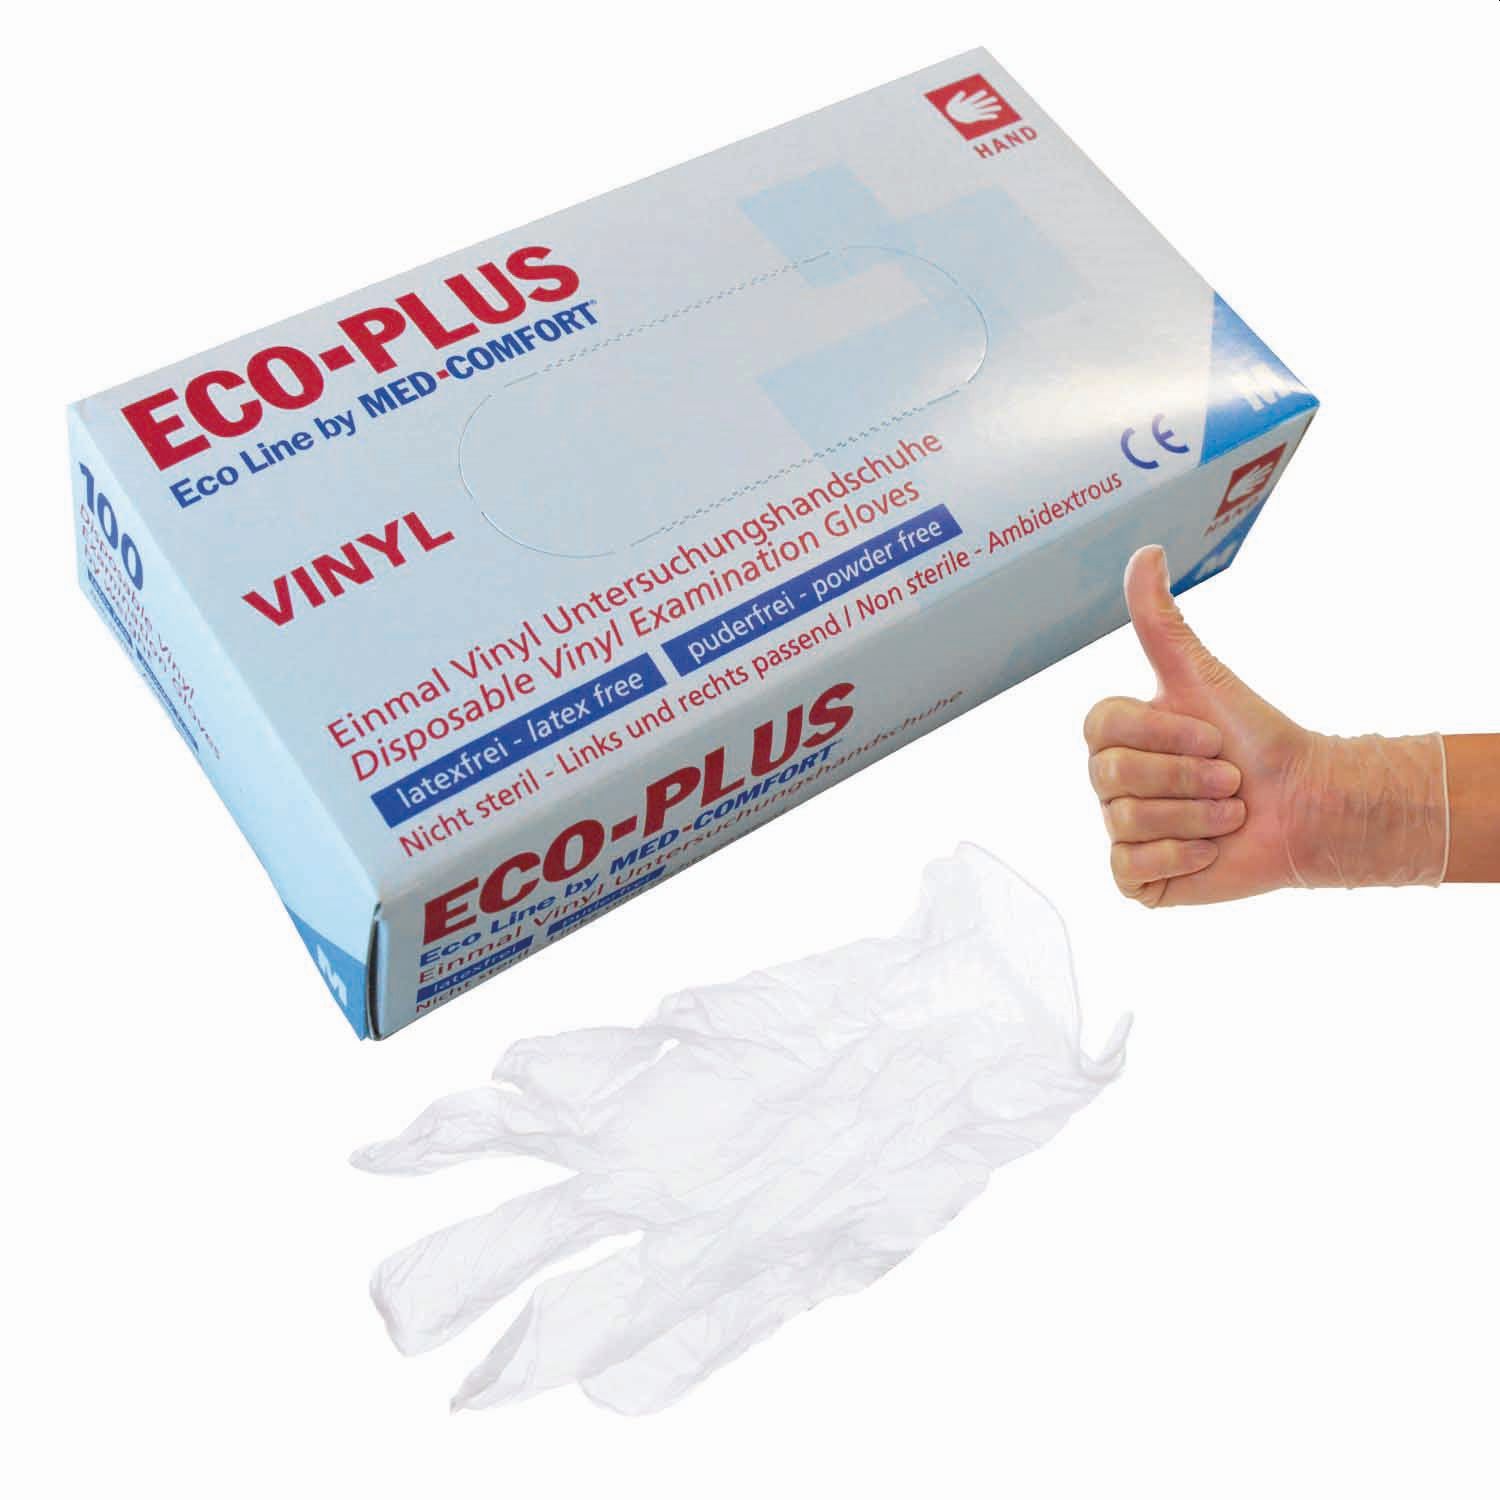 Einmalhandschuhe Vinyl Eco-Plus 5246304, Größe XL, 100 Stück, weiß